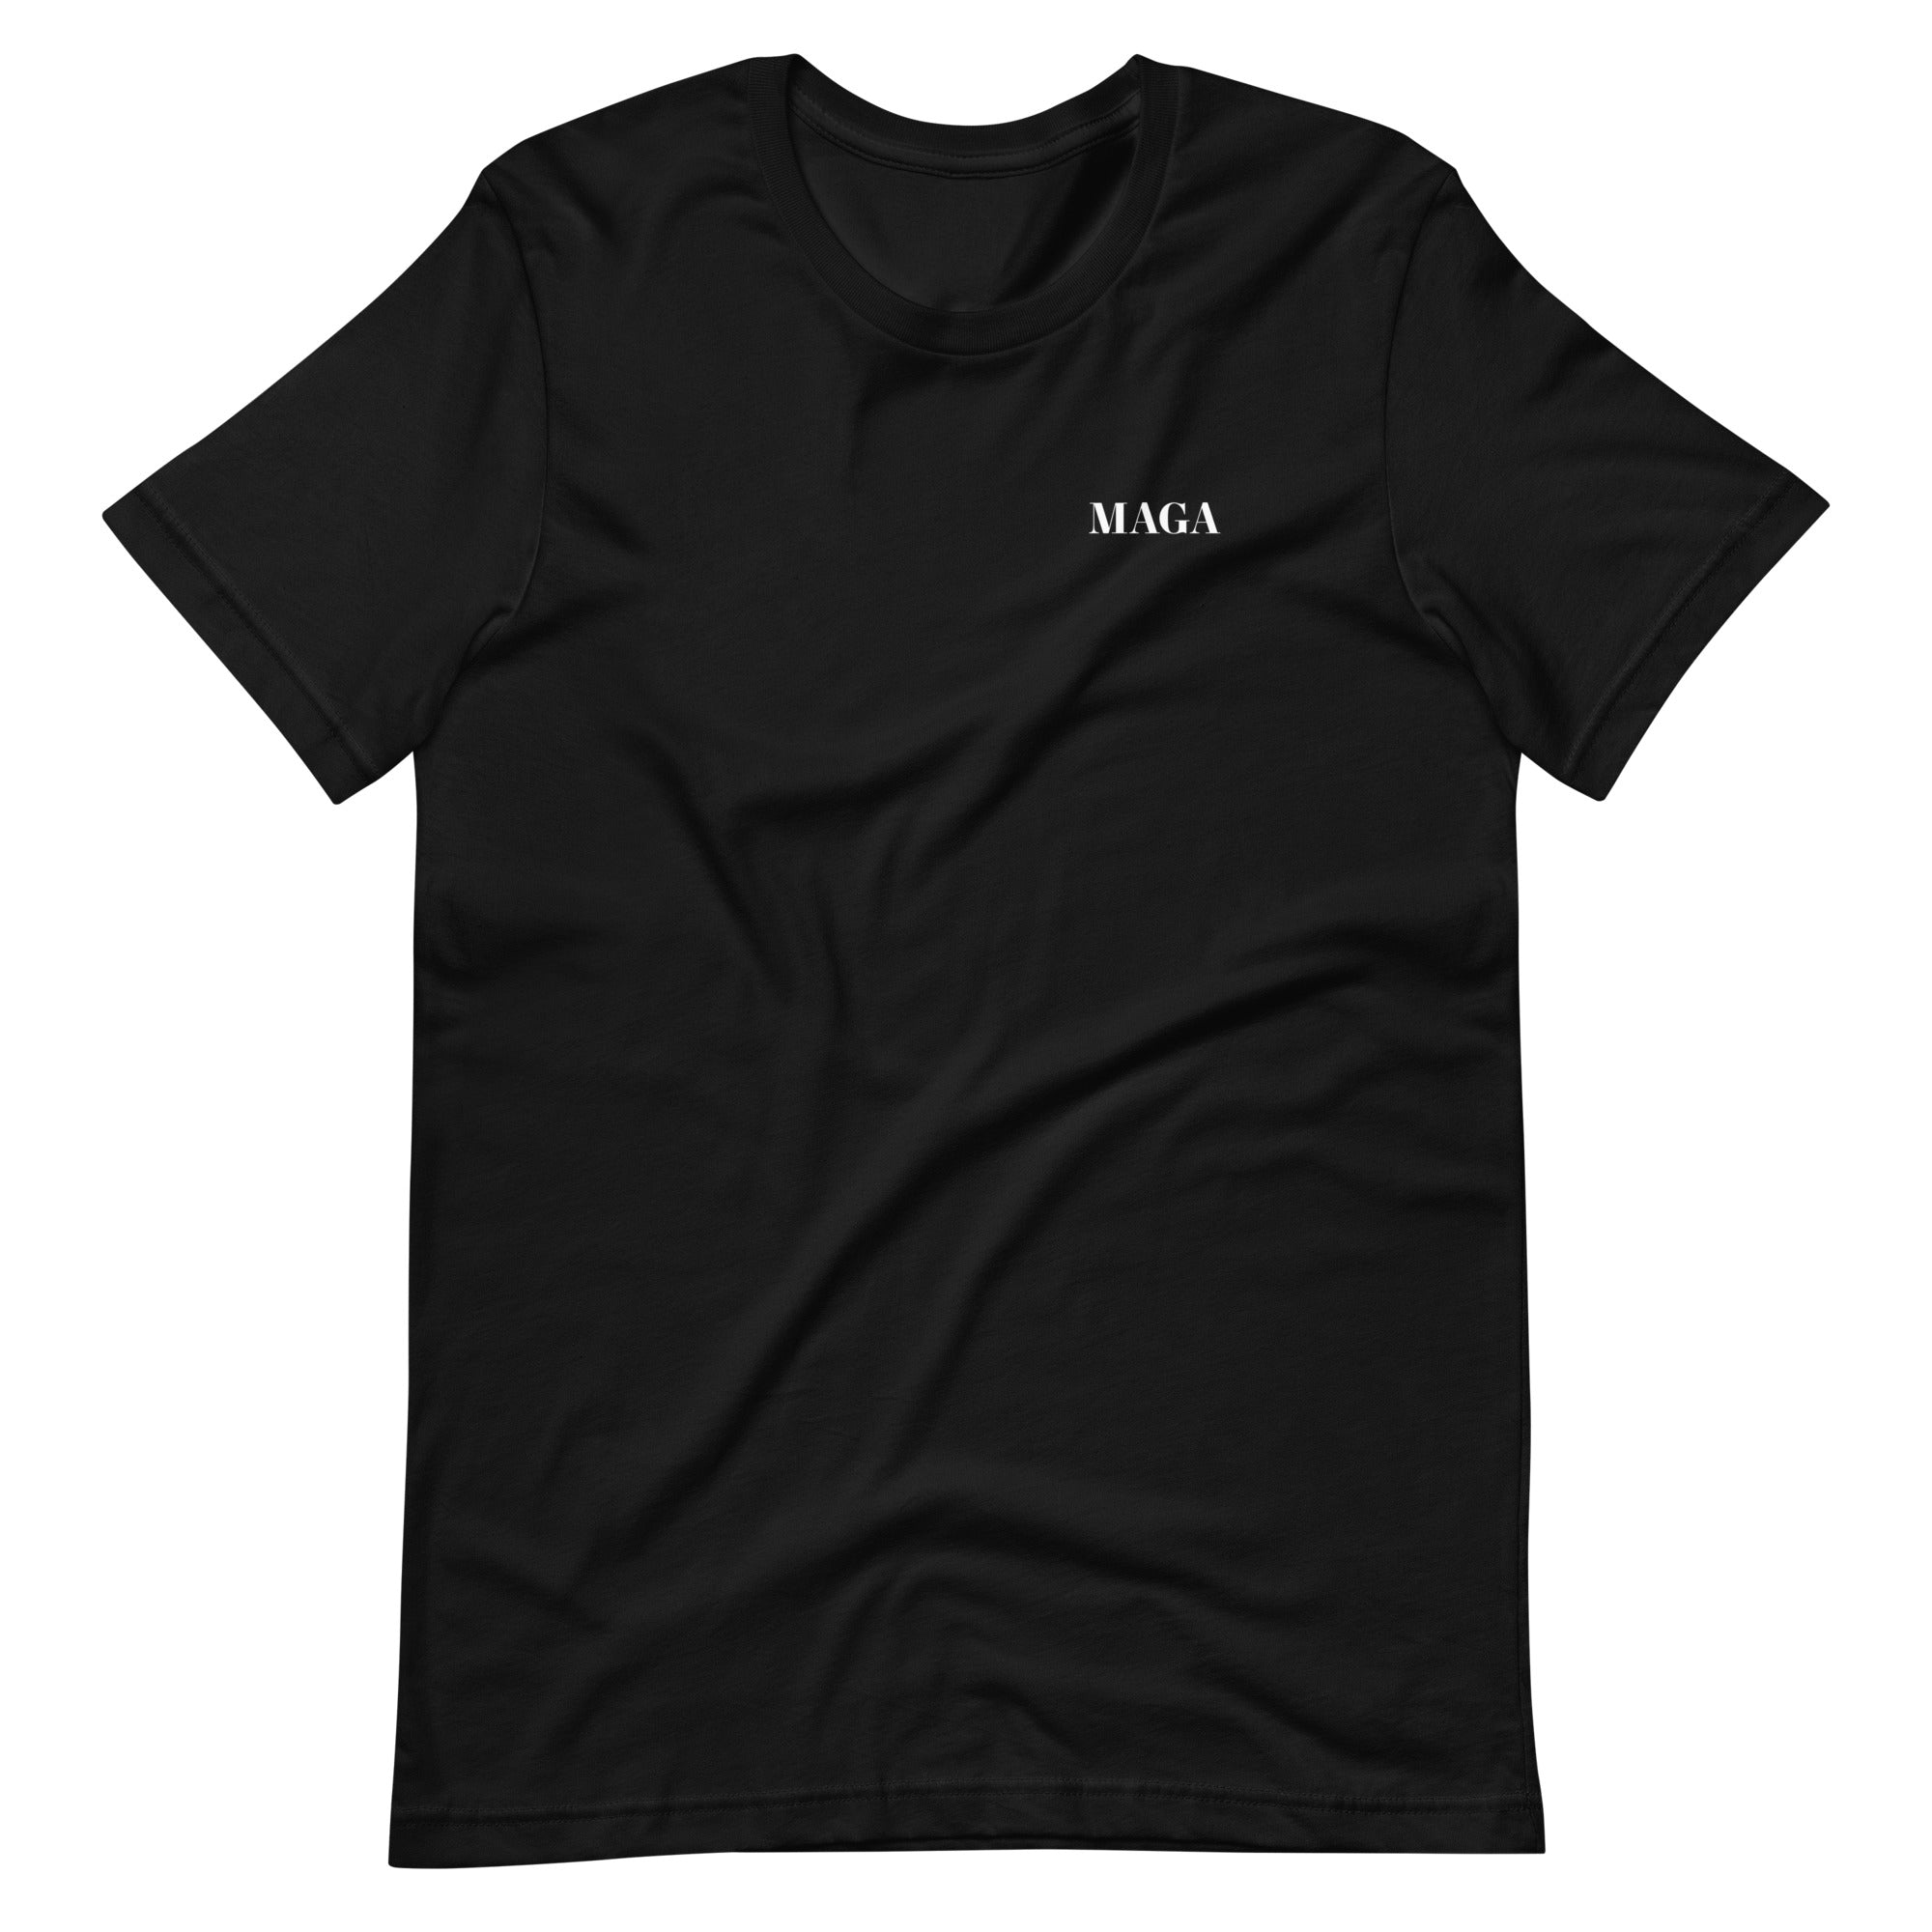 MAGA T-shirt